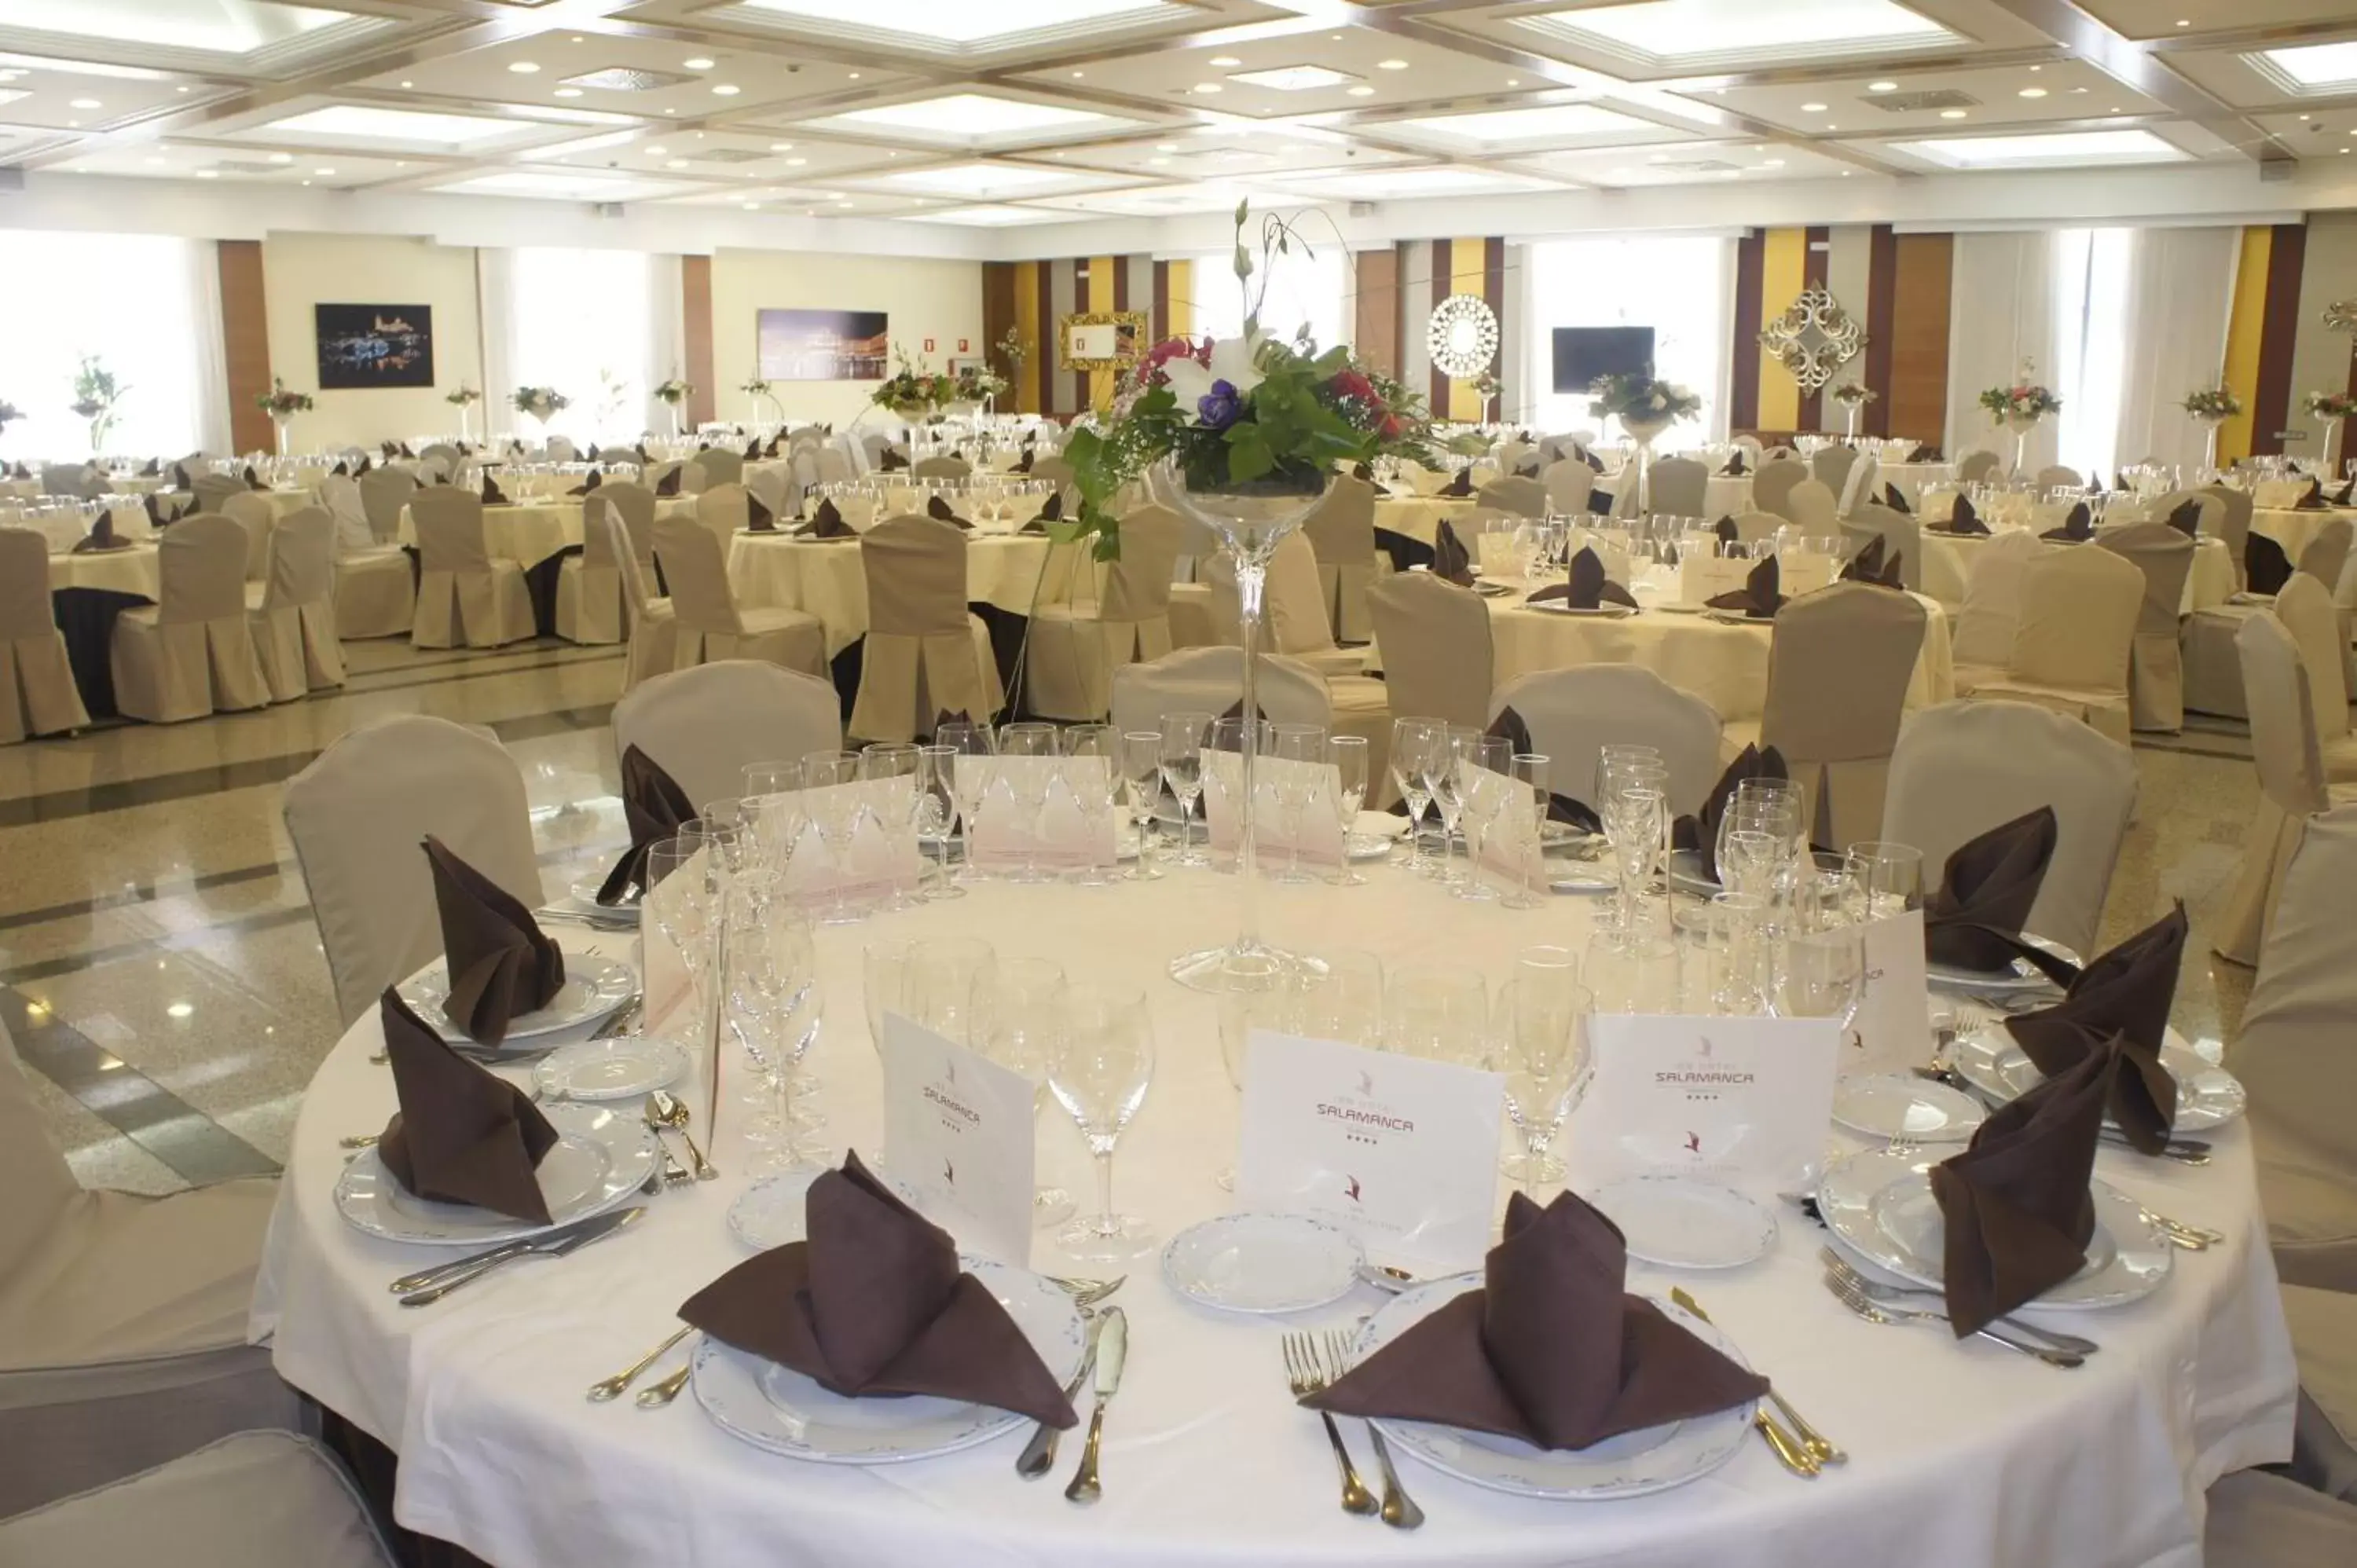 Banquet/Function facilities, Banquet Facilities in Hotel Bardo Recoletos Coco